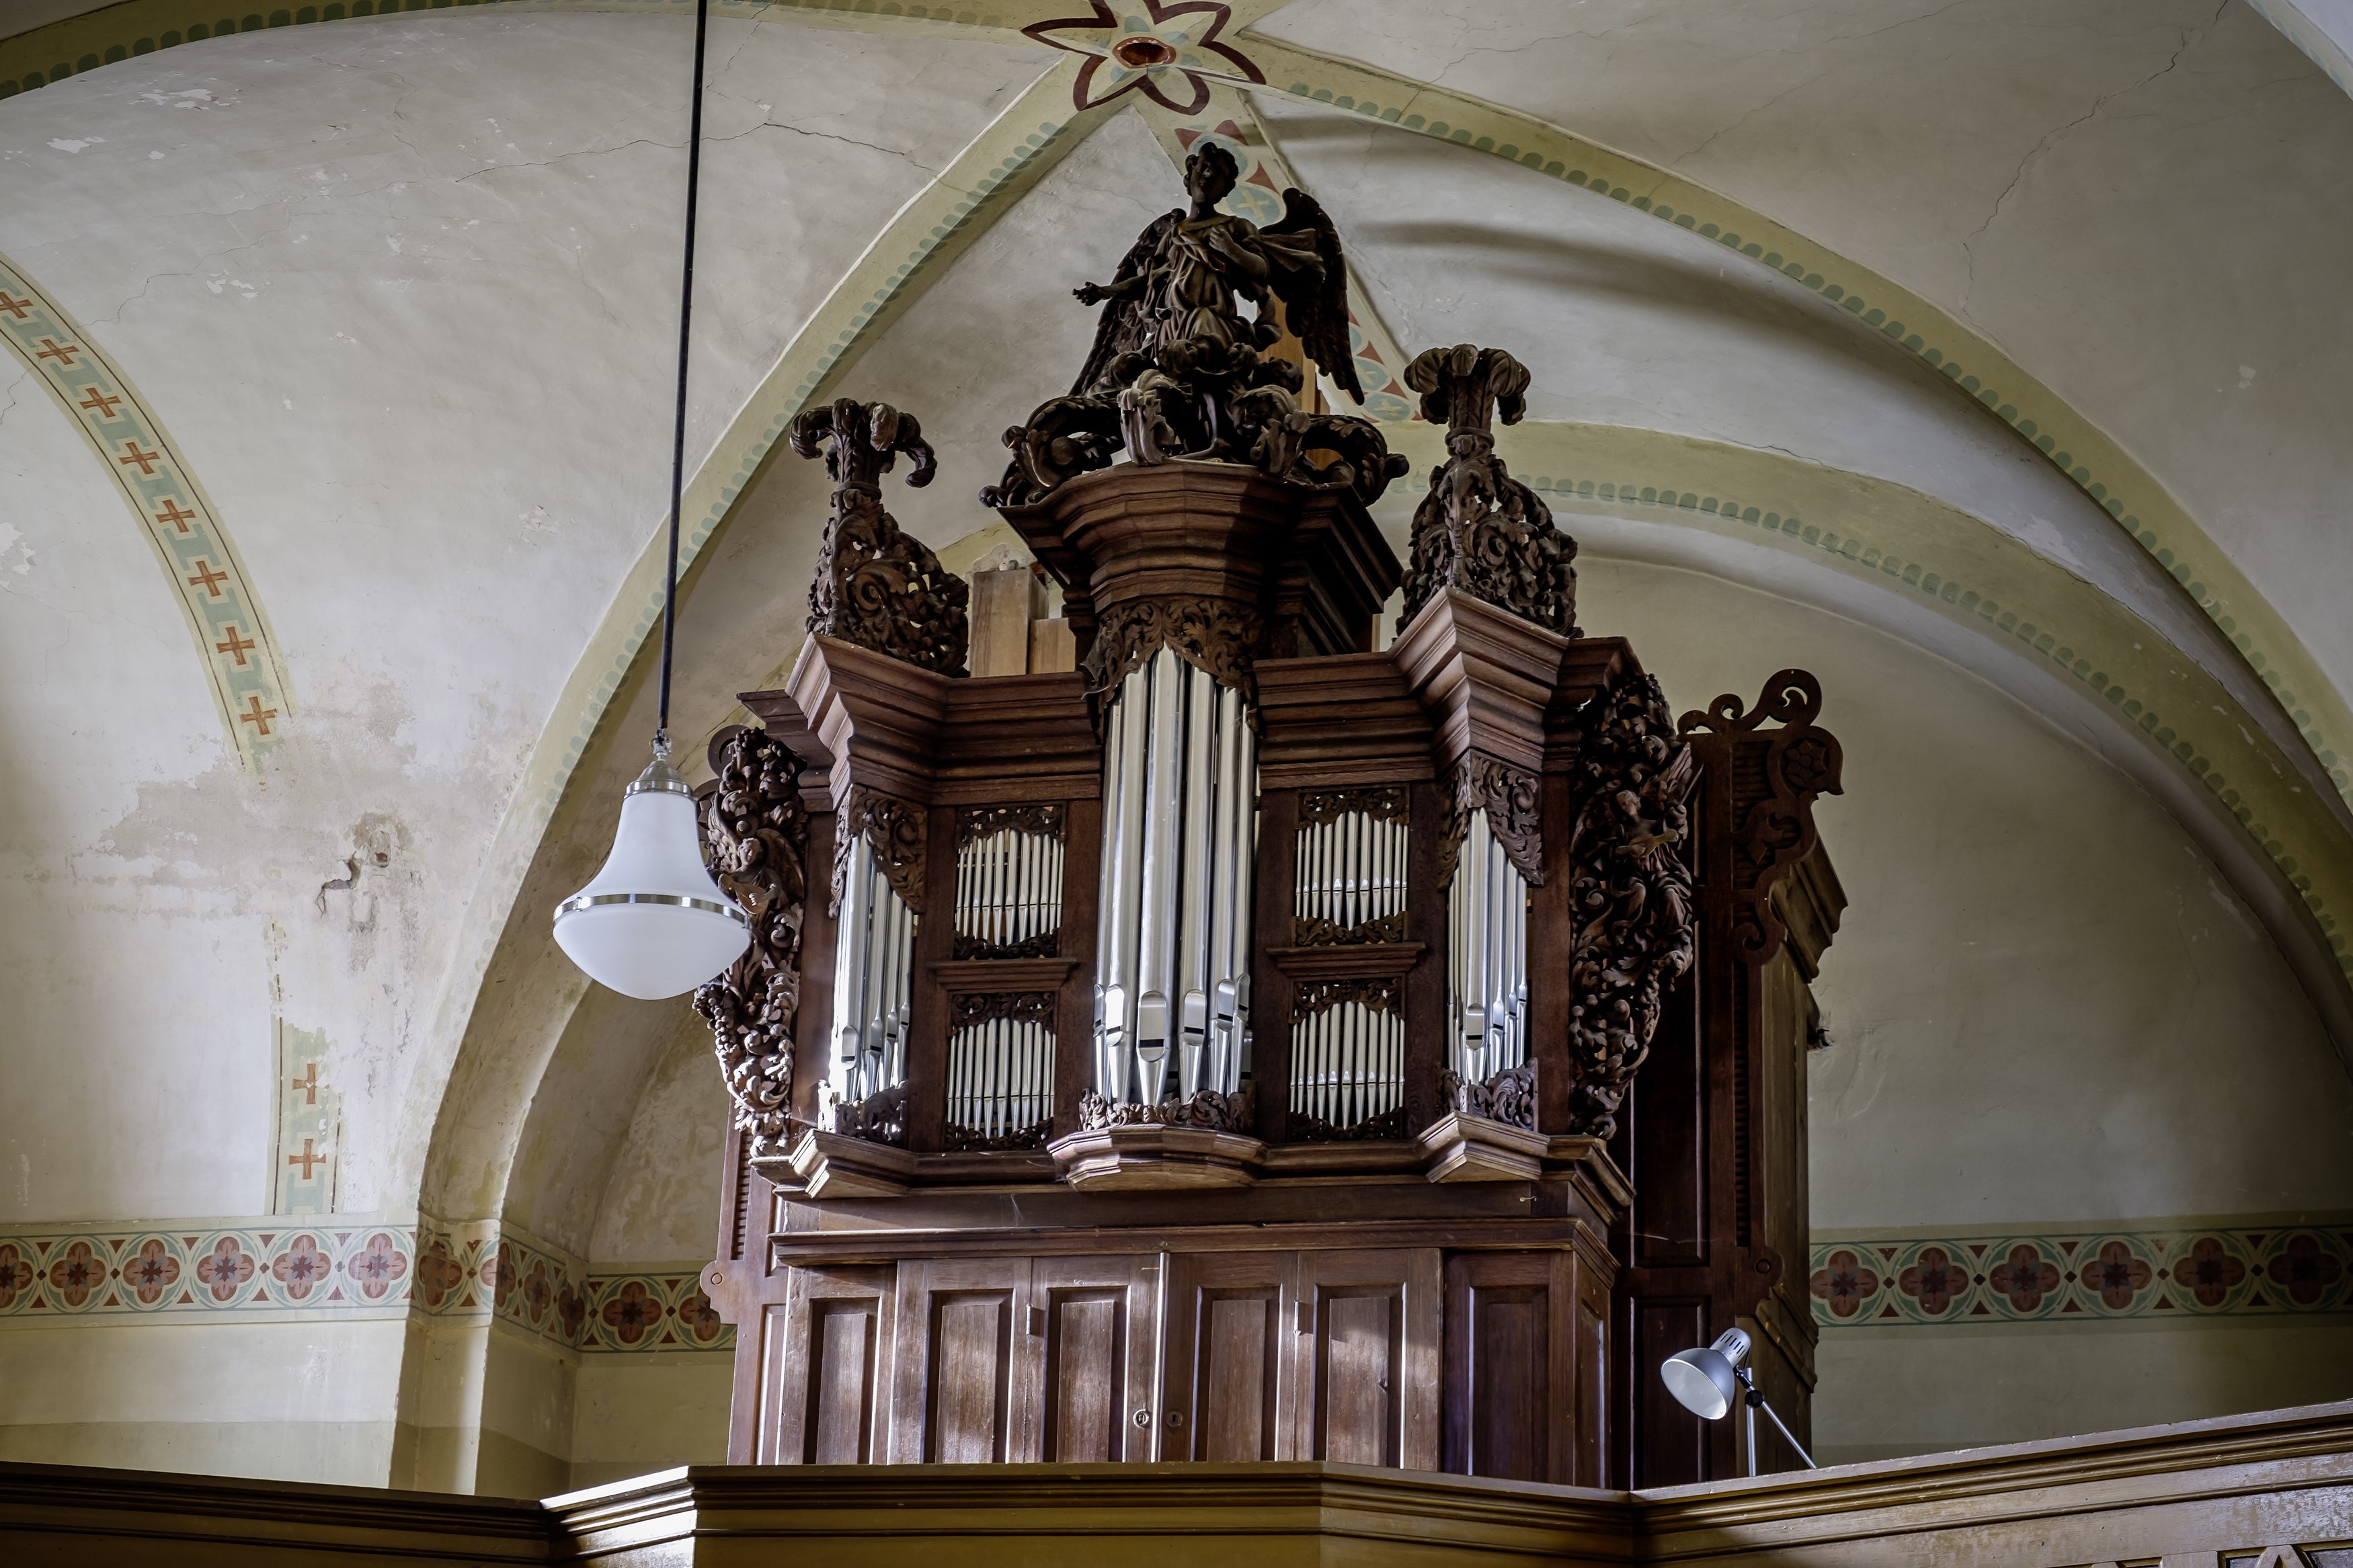 Orgel von Arp Schnittker und Friedrich Albert Mehmel, 1878 in der Schlosskirche Deyelsdorf. Foto: Heiko Prelle